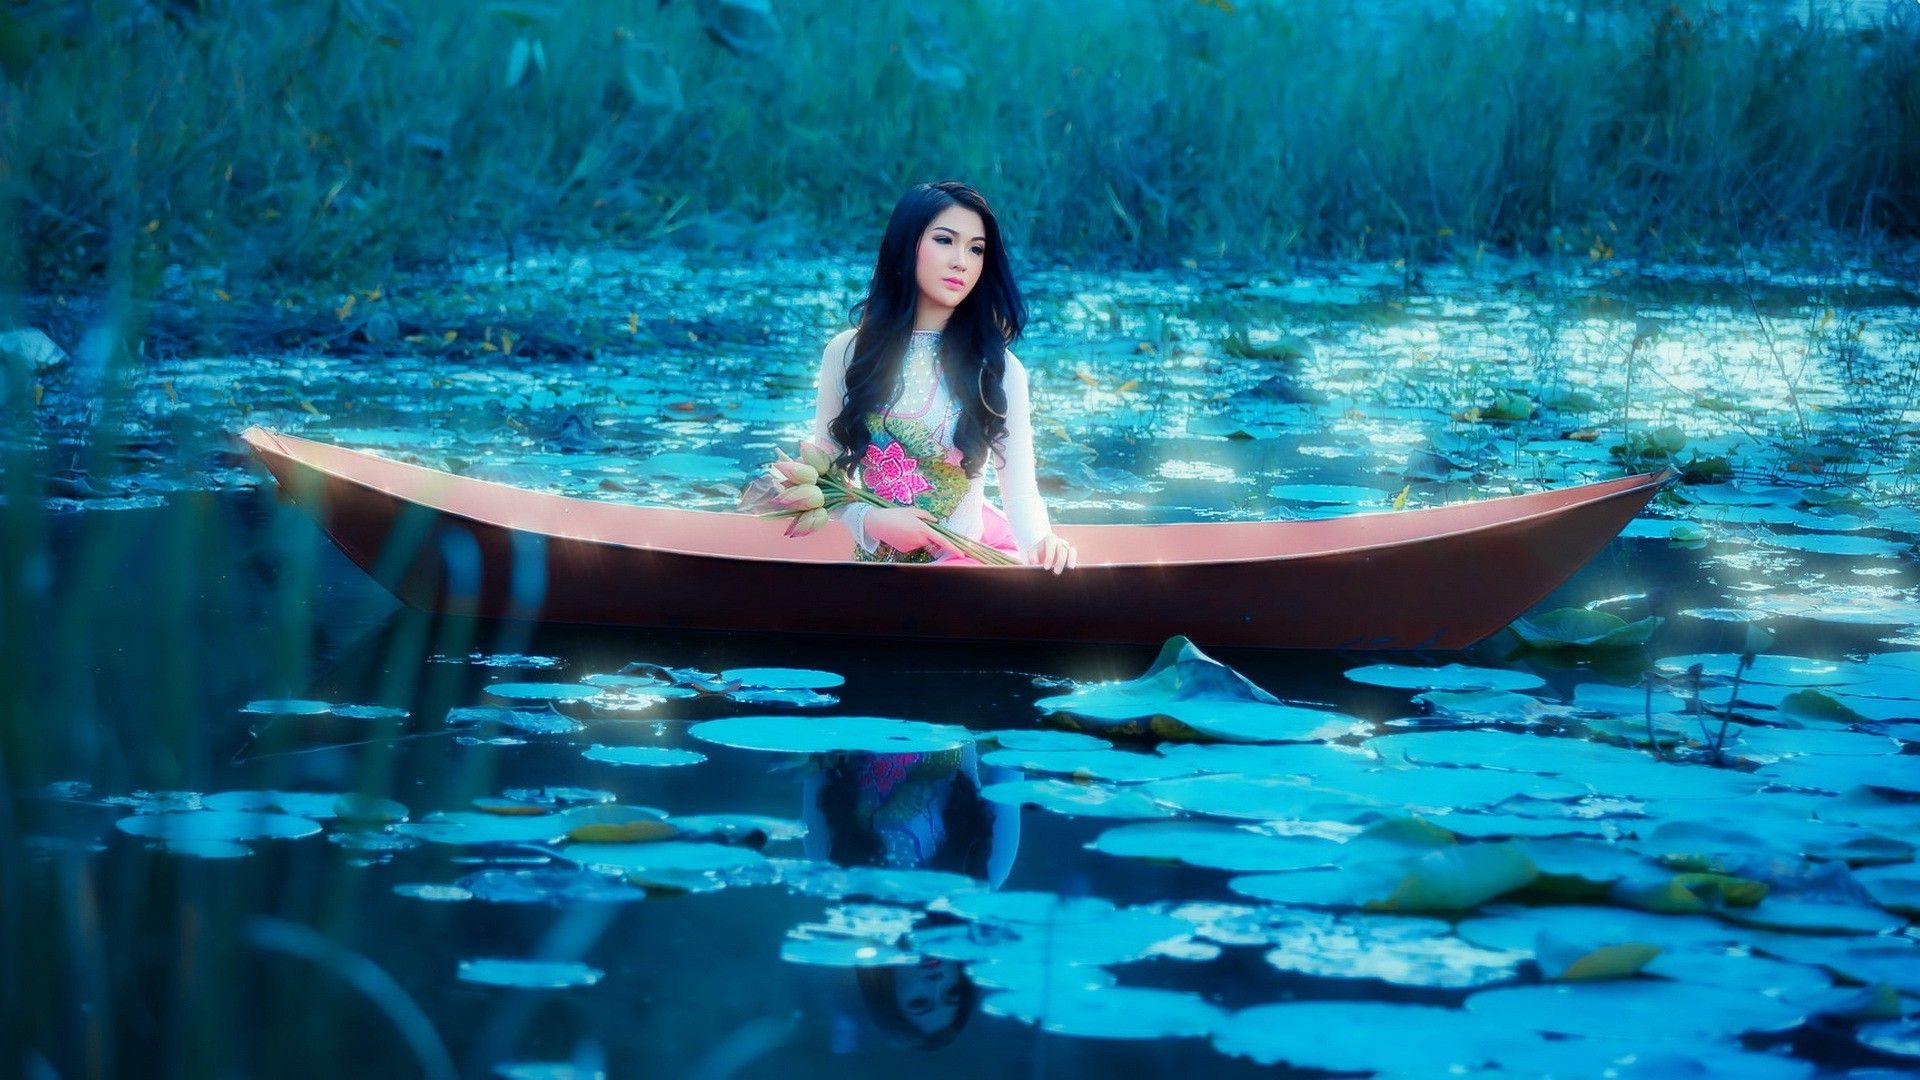 1920x1080 asian women outdoors model women boat fantasy art wallpaper JPG 433 kB